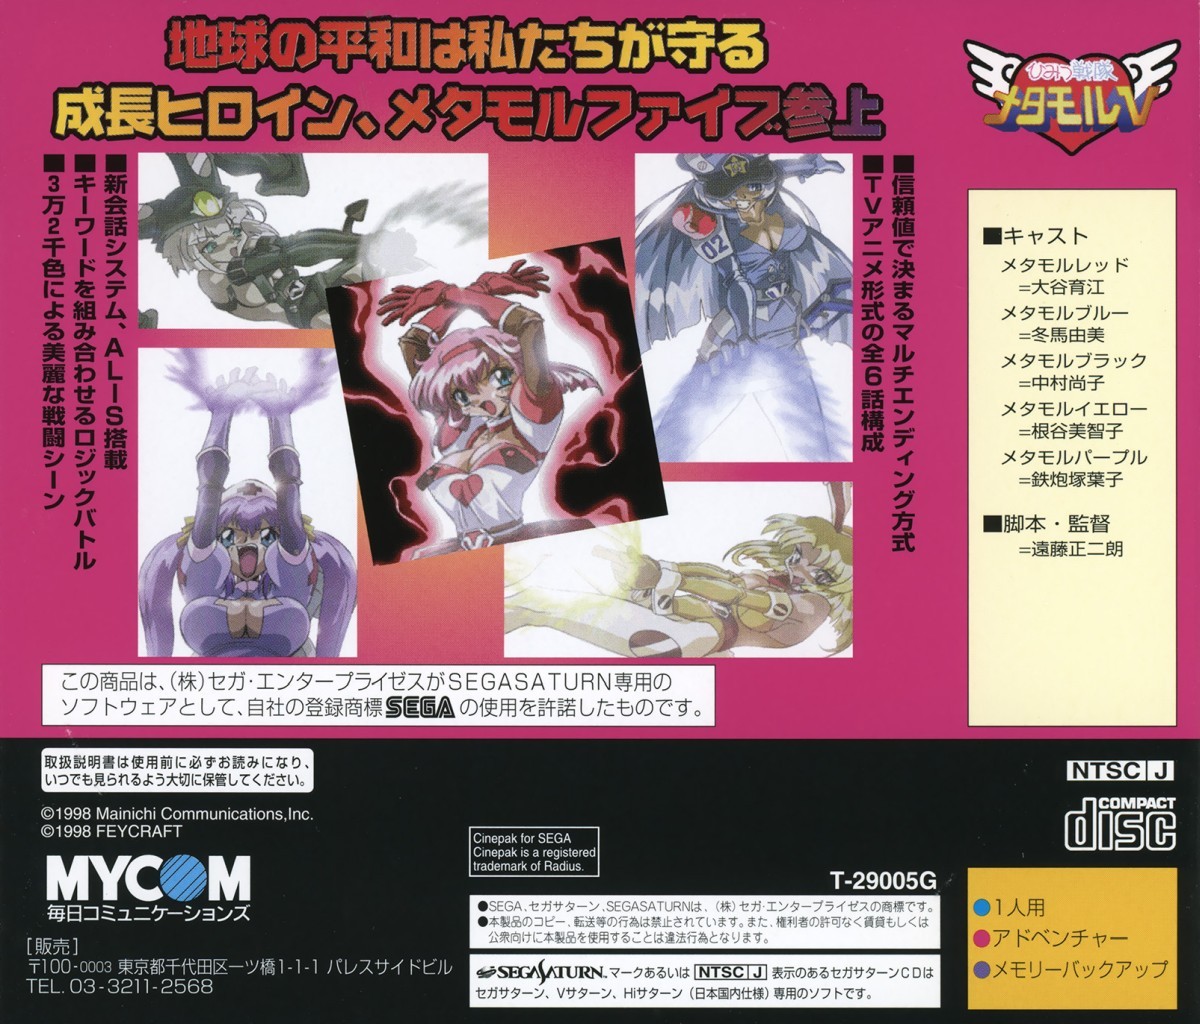 Himitsu Sentai Metamor V cover